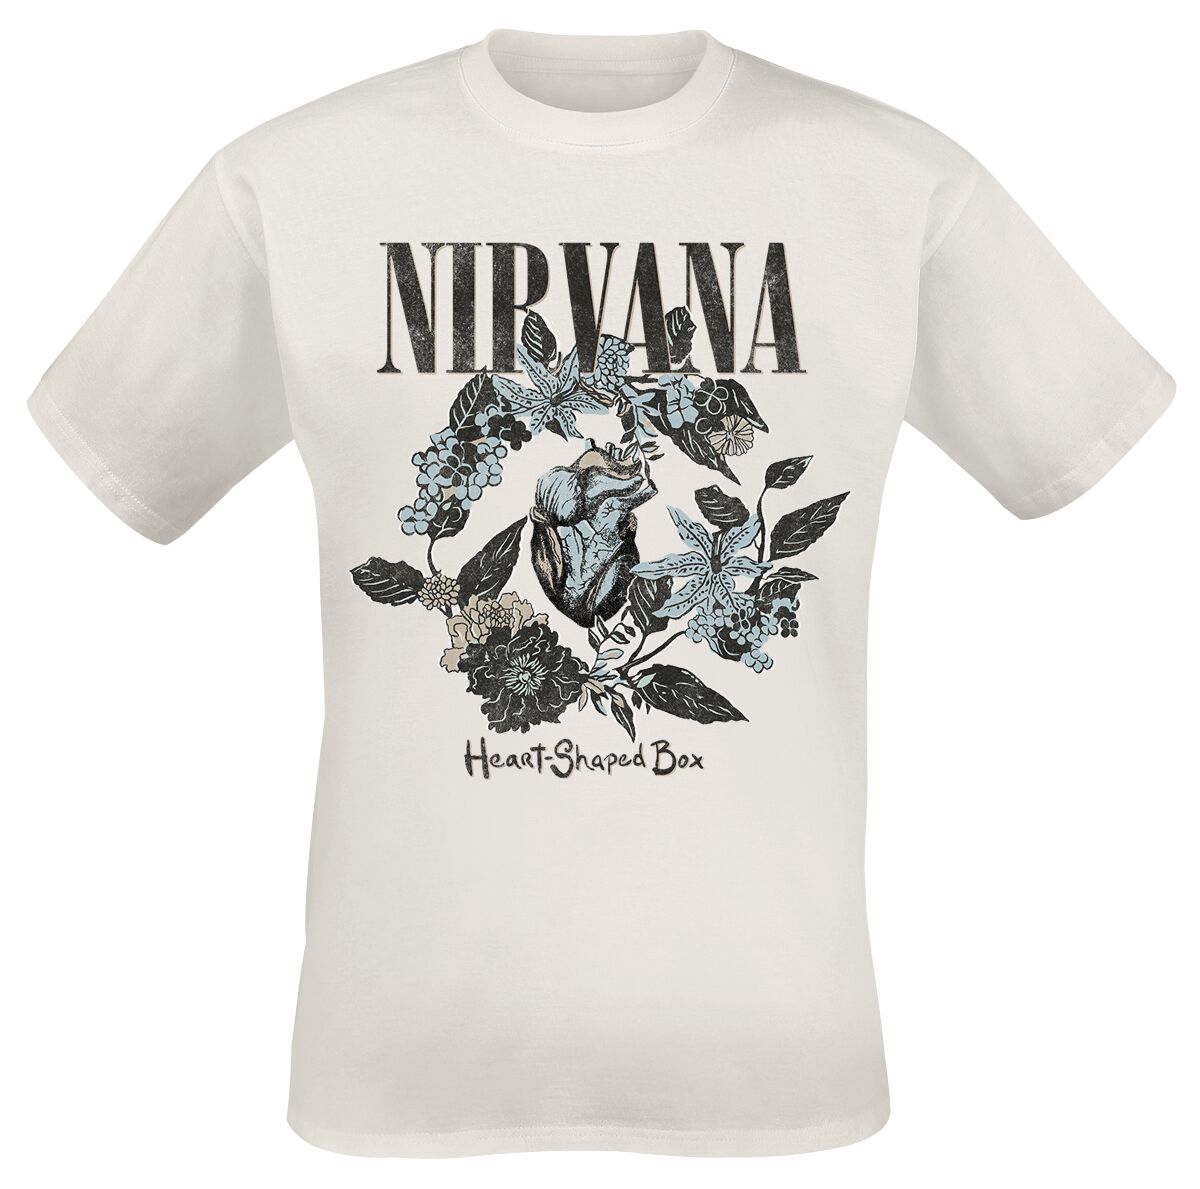 Nirvana T-Shirt - Heart Shape Box - S bis 3XL - für Männer - Größe S - weiß  - Lizenziertes Merchandise!